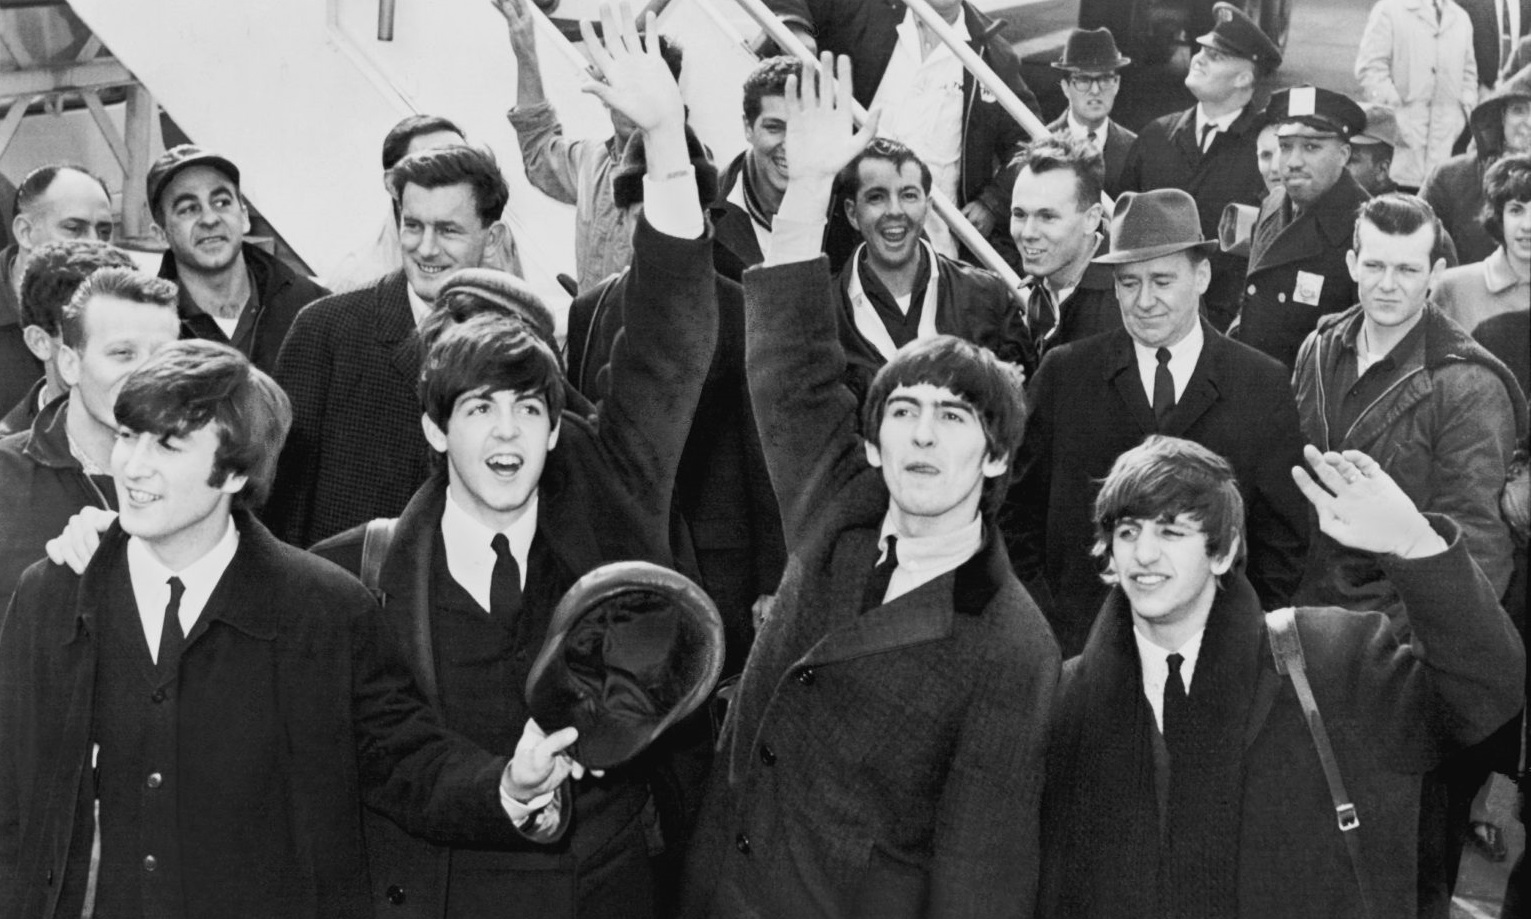 The Beatles arribando en Estados Unidos por primera vez el 7 de febrero de 1964.